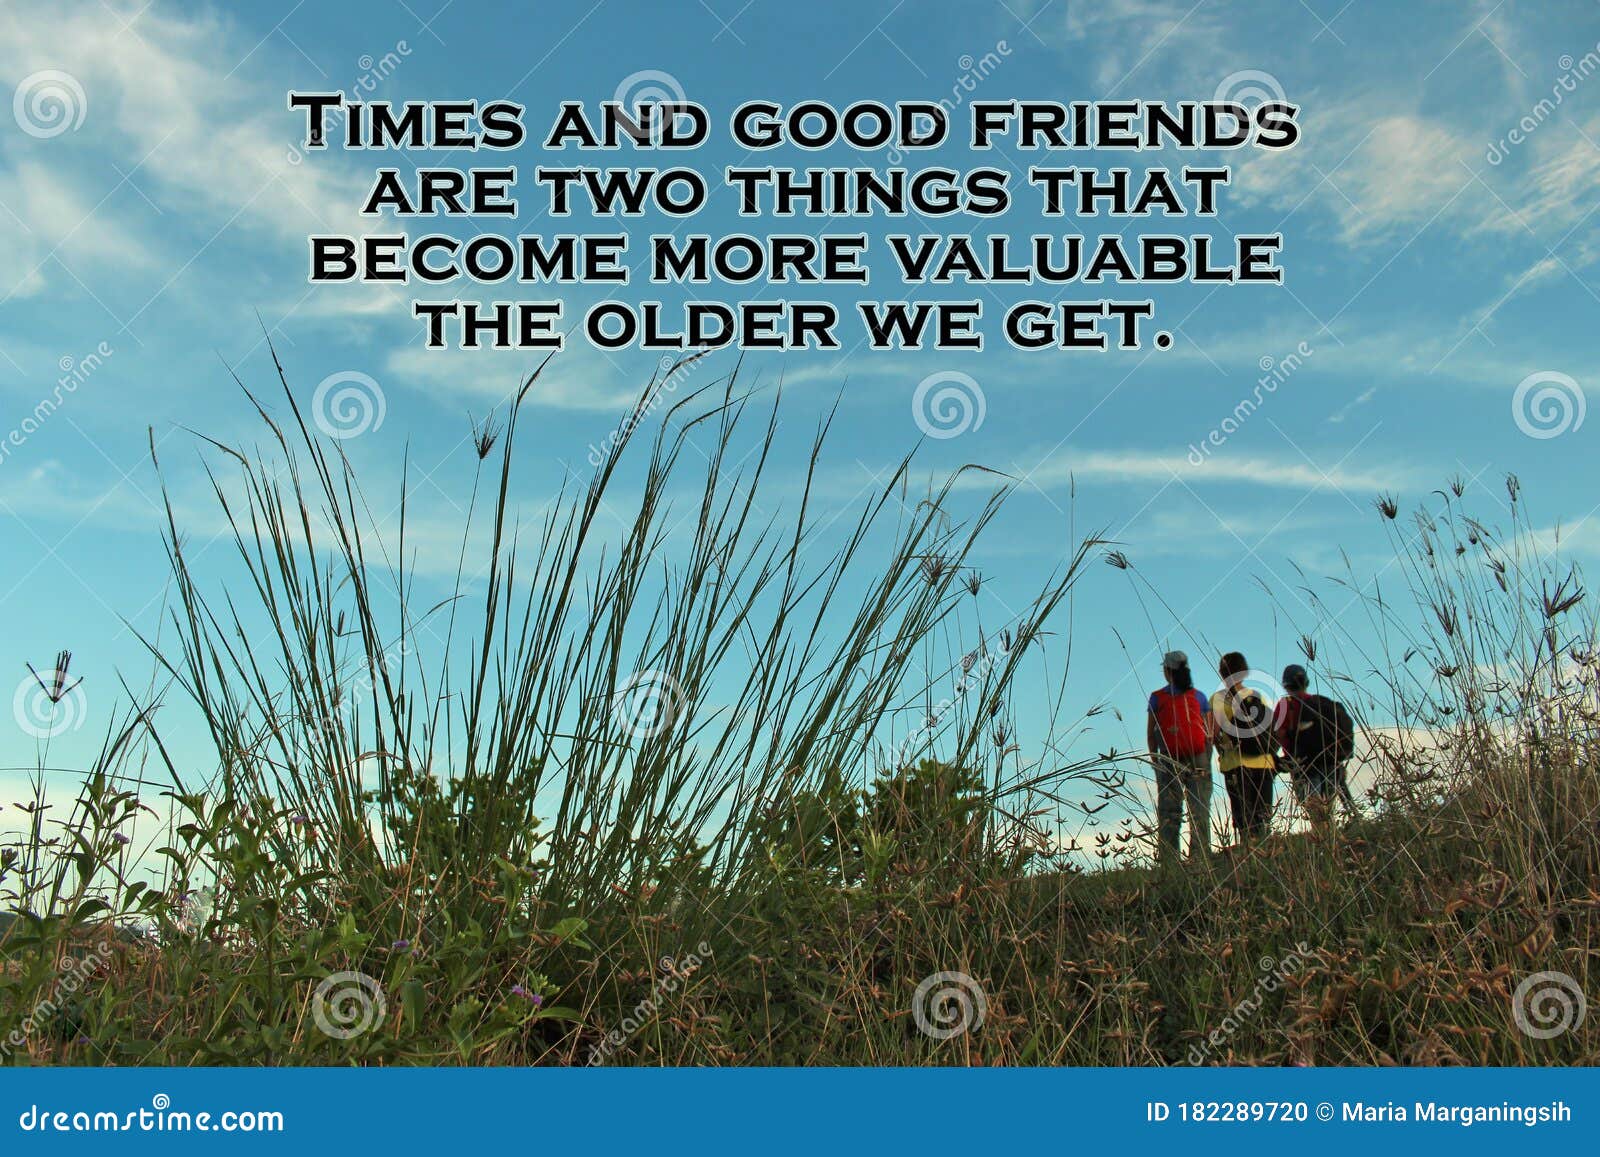 鼓舞人心的引言 时代和好朋友是两样东西 当我们变得年老时 它们变得更有价值带草甸背景库存照片 图片包括有